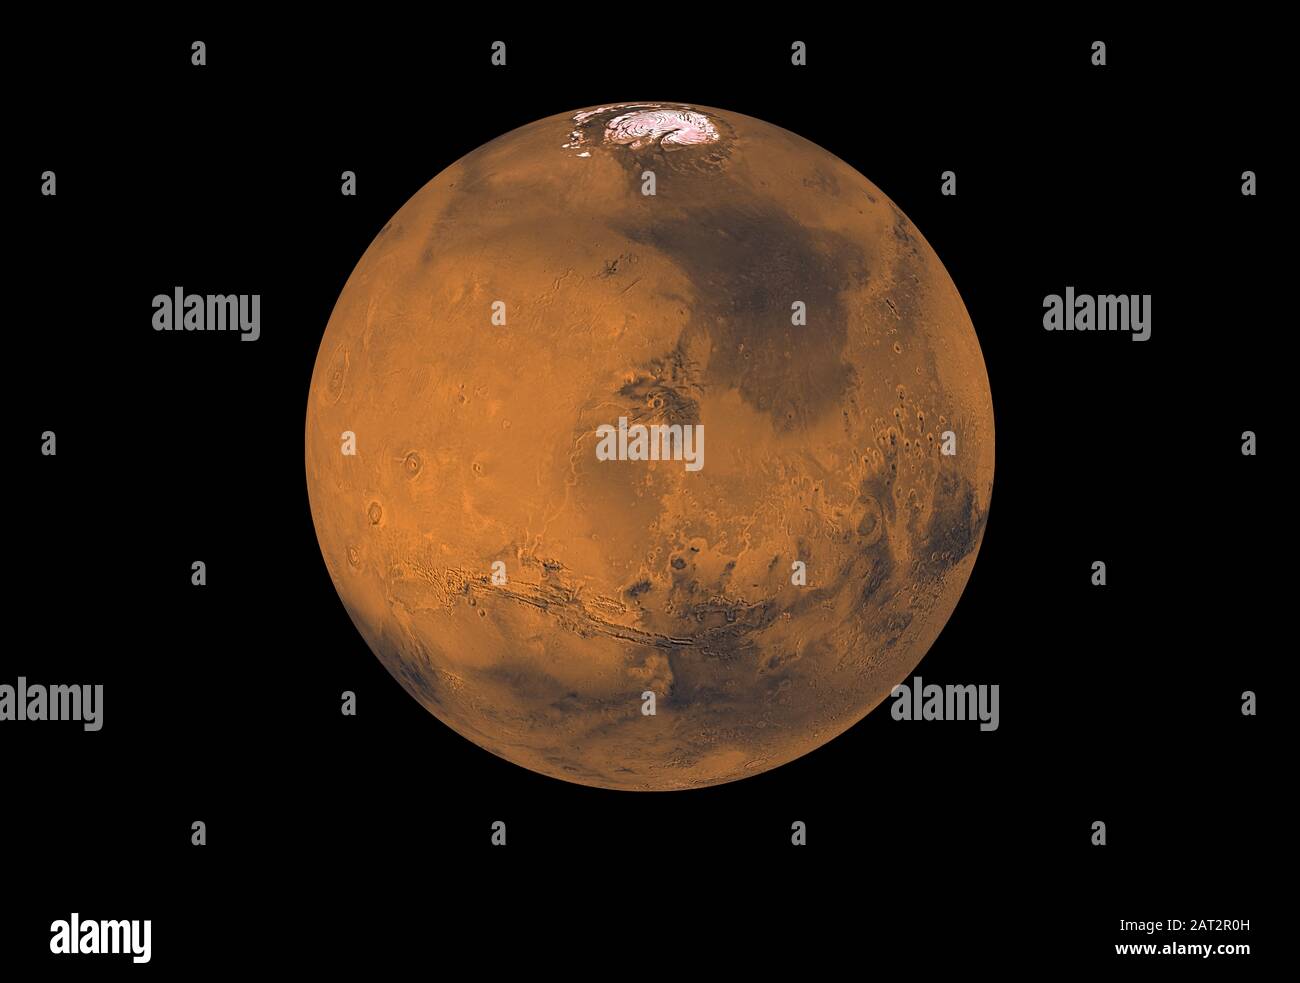 Marte - 1998 - cerca de 1000 Viking Orbiter imágenes de filtro rojo y violeta fueron procesadas para proporcionar esta cobertura global de color del planeta Marte Foto de stock